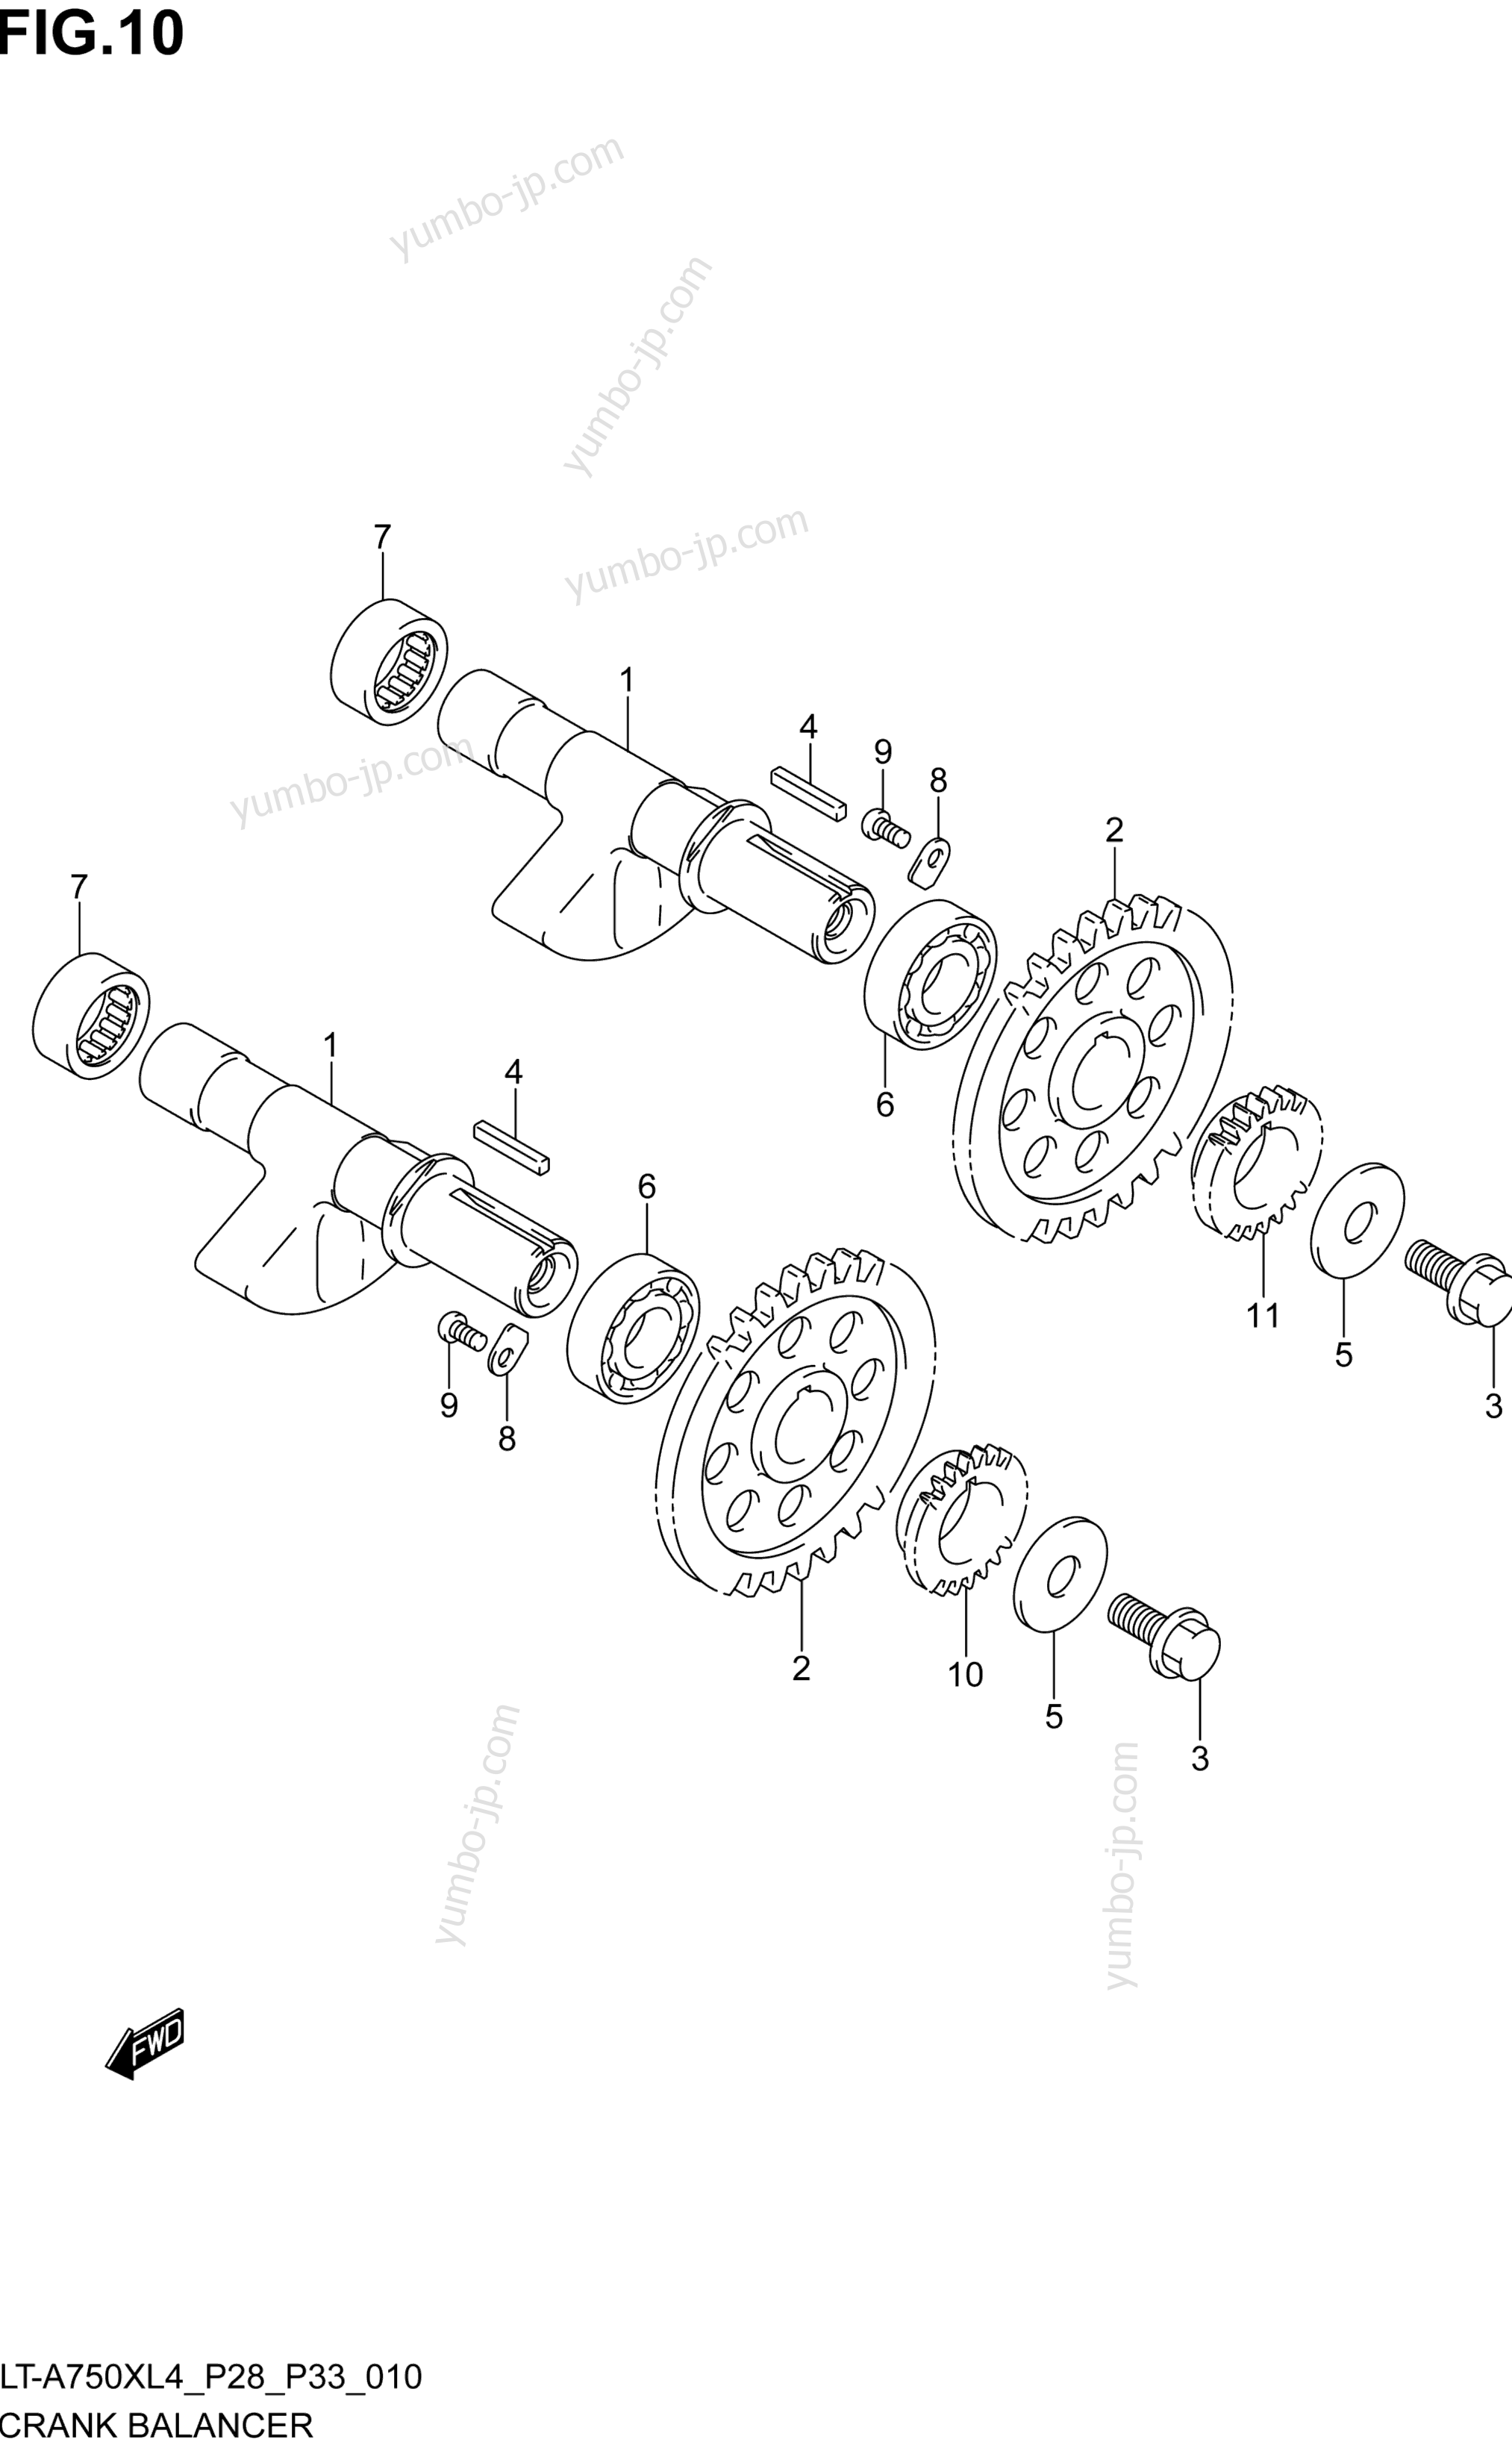 Crank Balancer for ATVs SUZUKI LT-A750XZ 2014 year